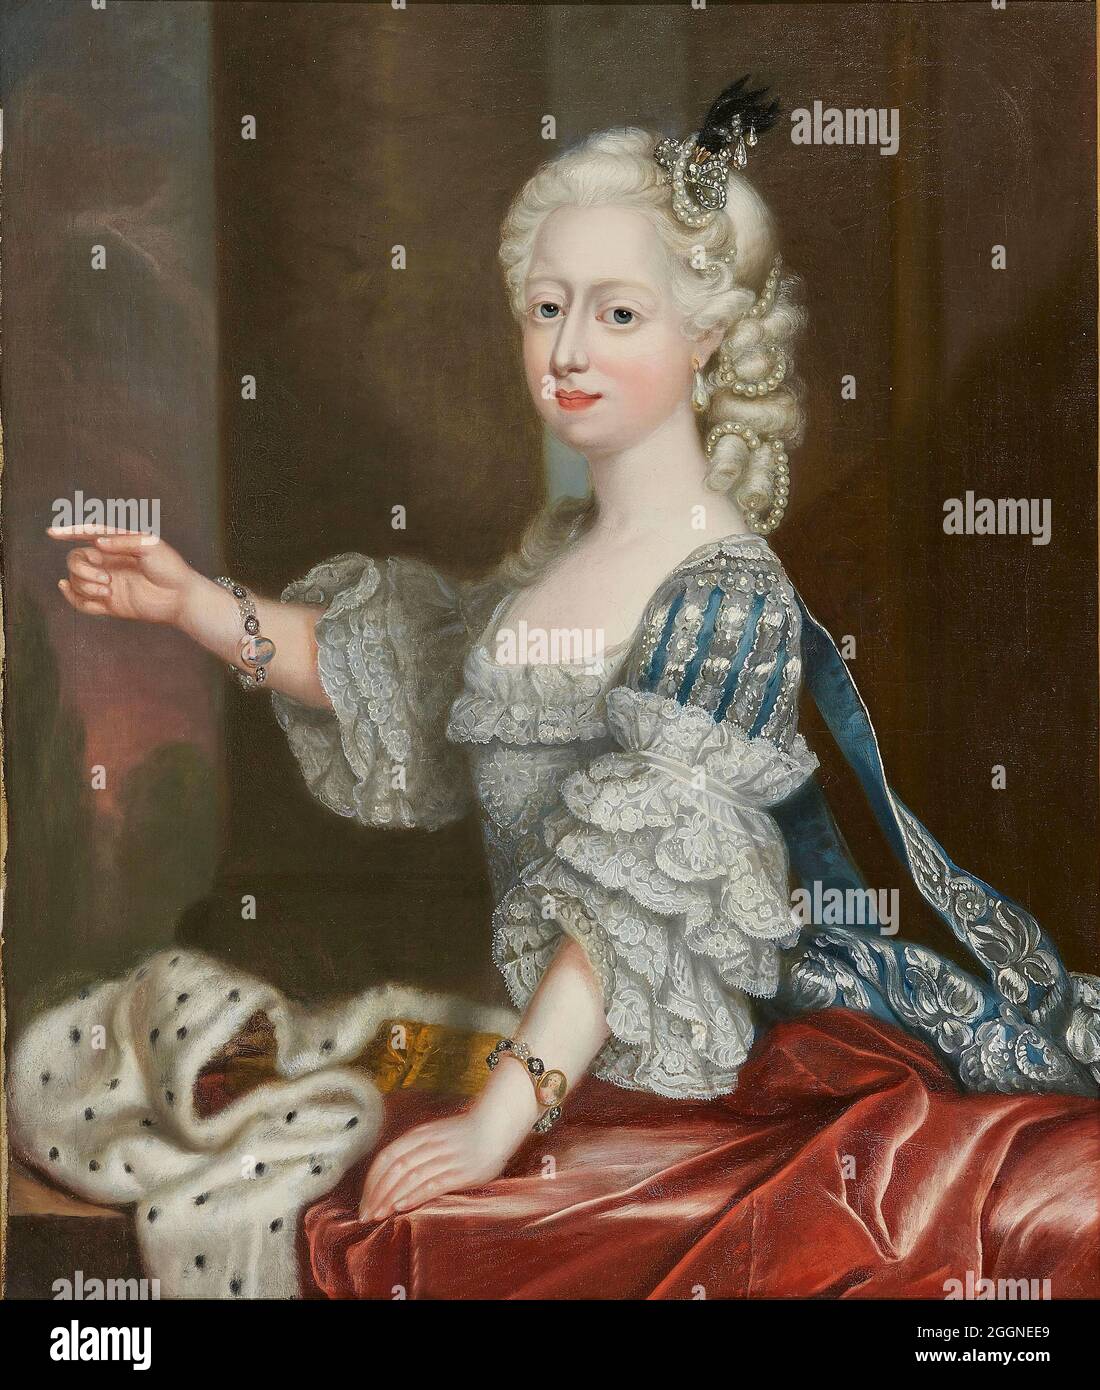 Princesa Augusta Frederica de Gran Bretaña (1737-1813), duquesa de Brunswick-Wolfenbuttel. Museo: COLECCIÓN PRIVADA. Autor: Thomas Frye. Foto de stock